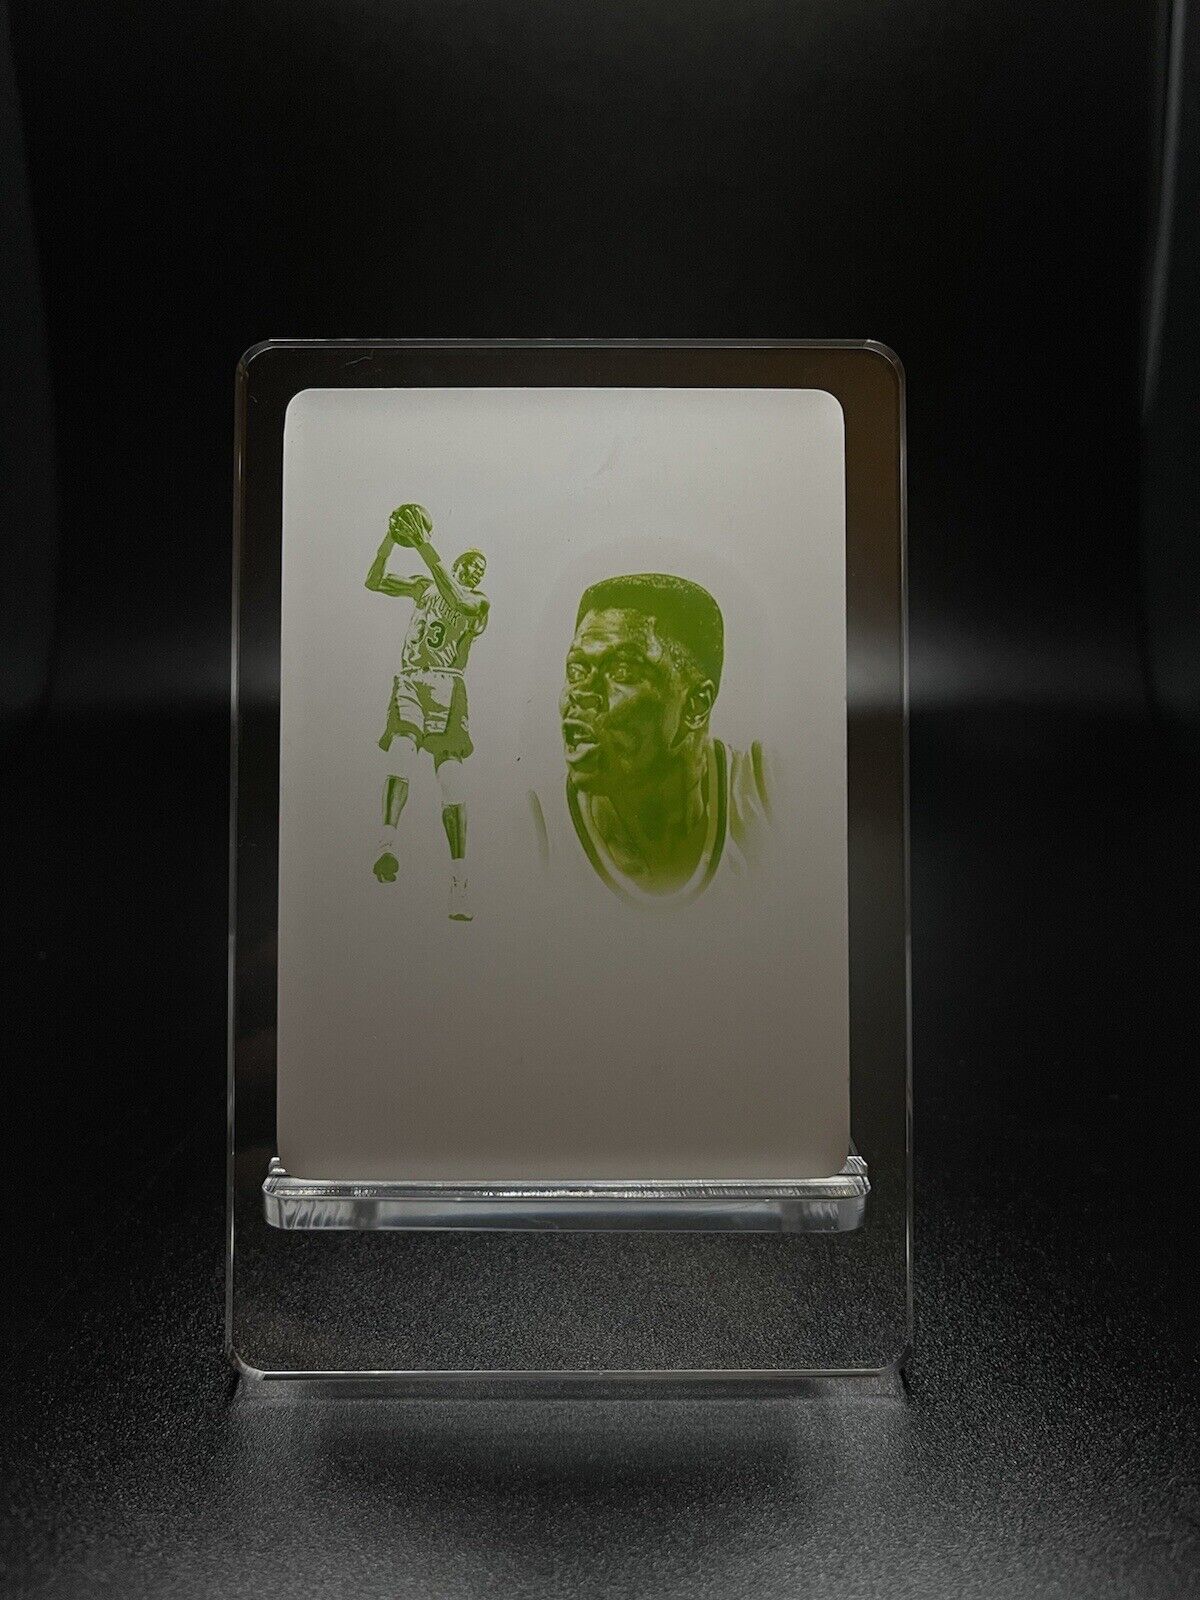 Patrick Ewing 1/1 Printing Plate 2019-20 Panini National Treasures *Nm-M* 🟠🔵